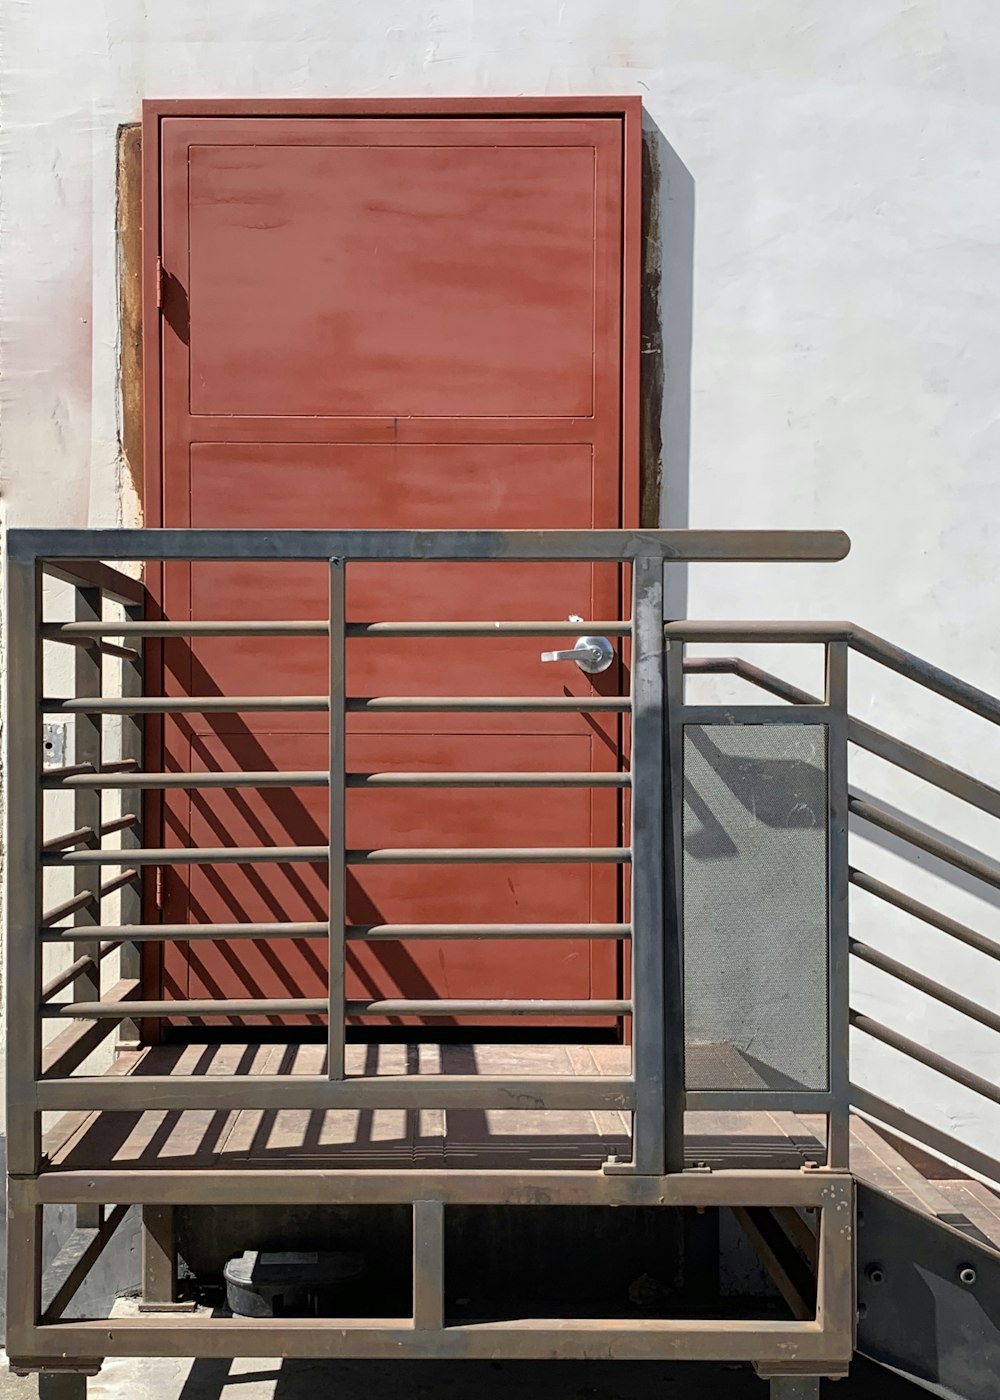 black metal railings near red wooden door